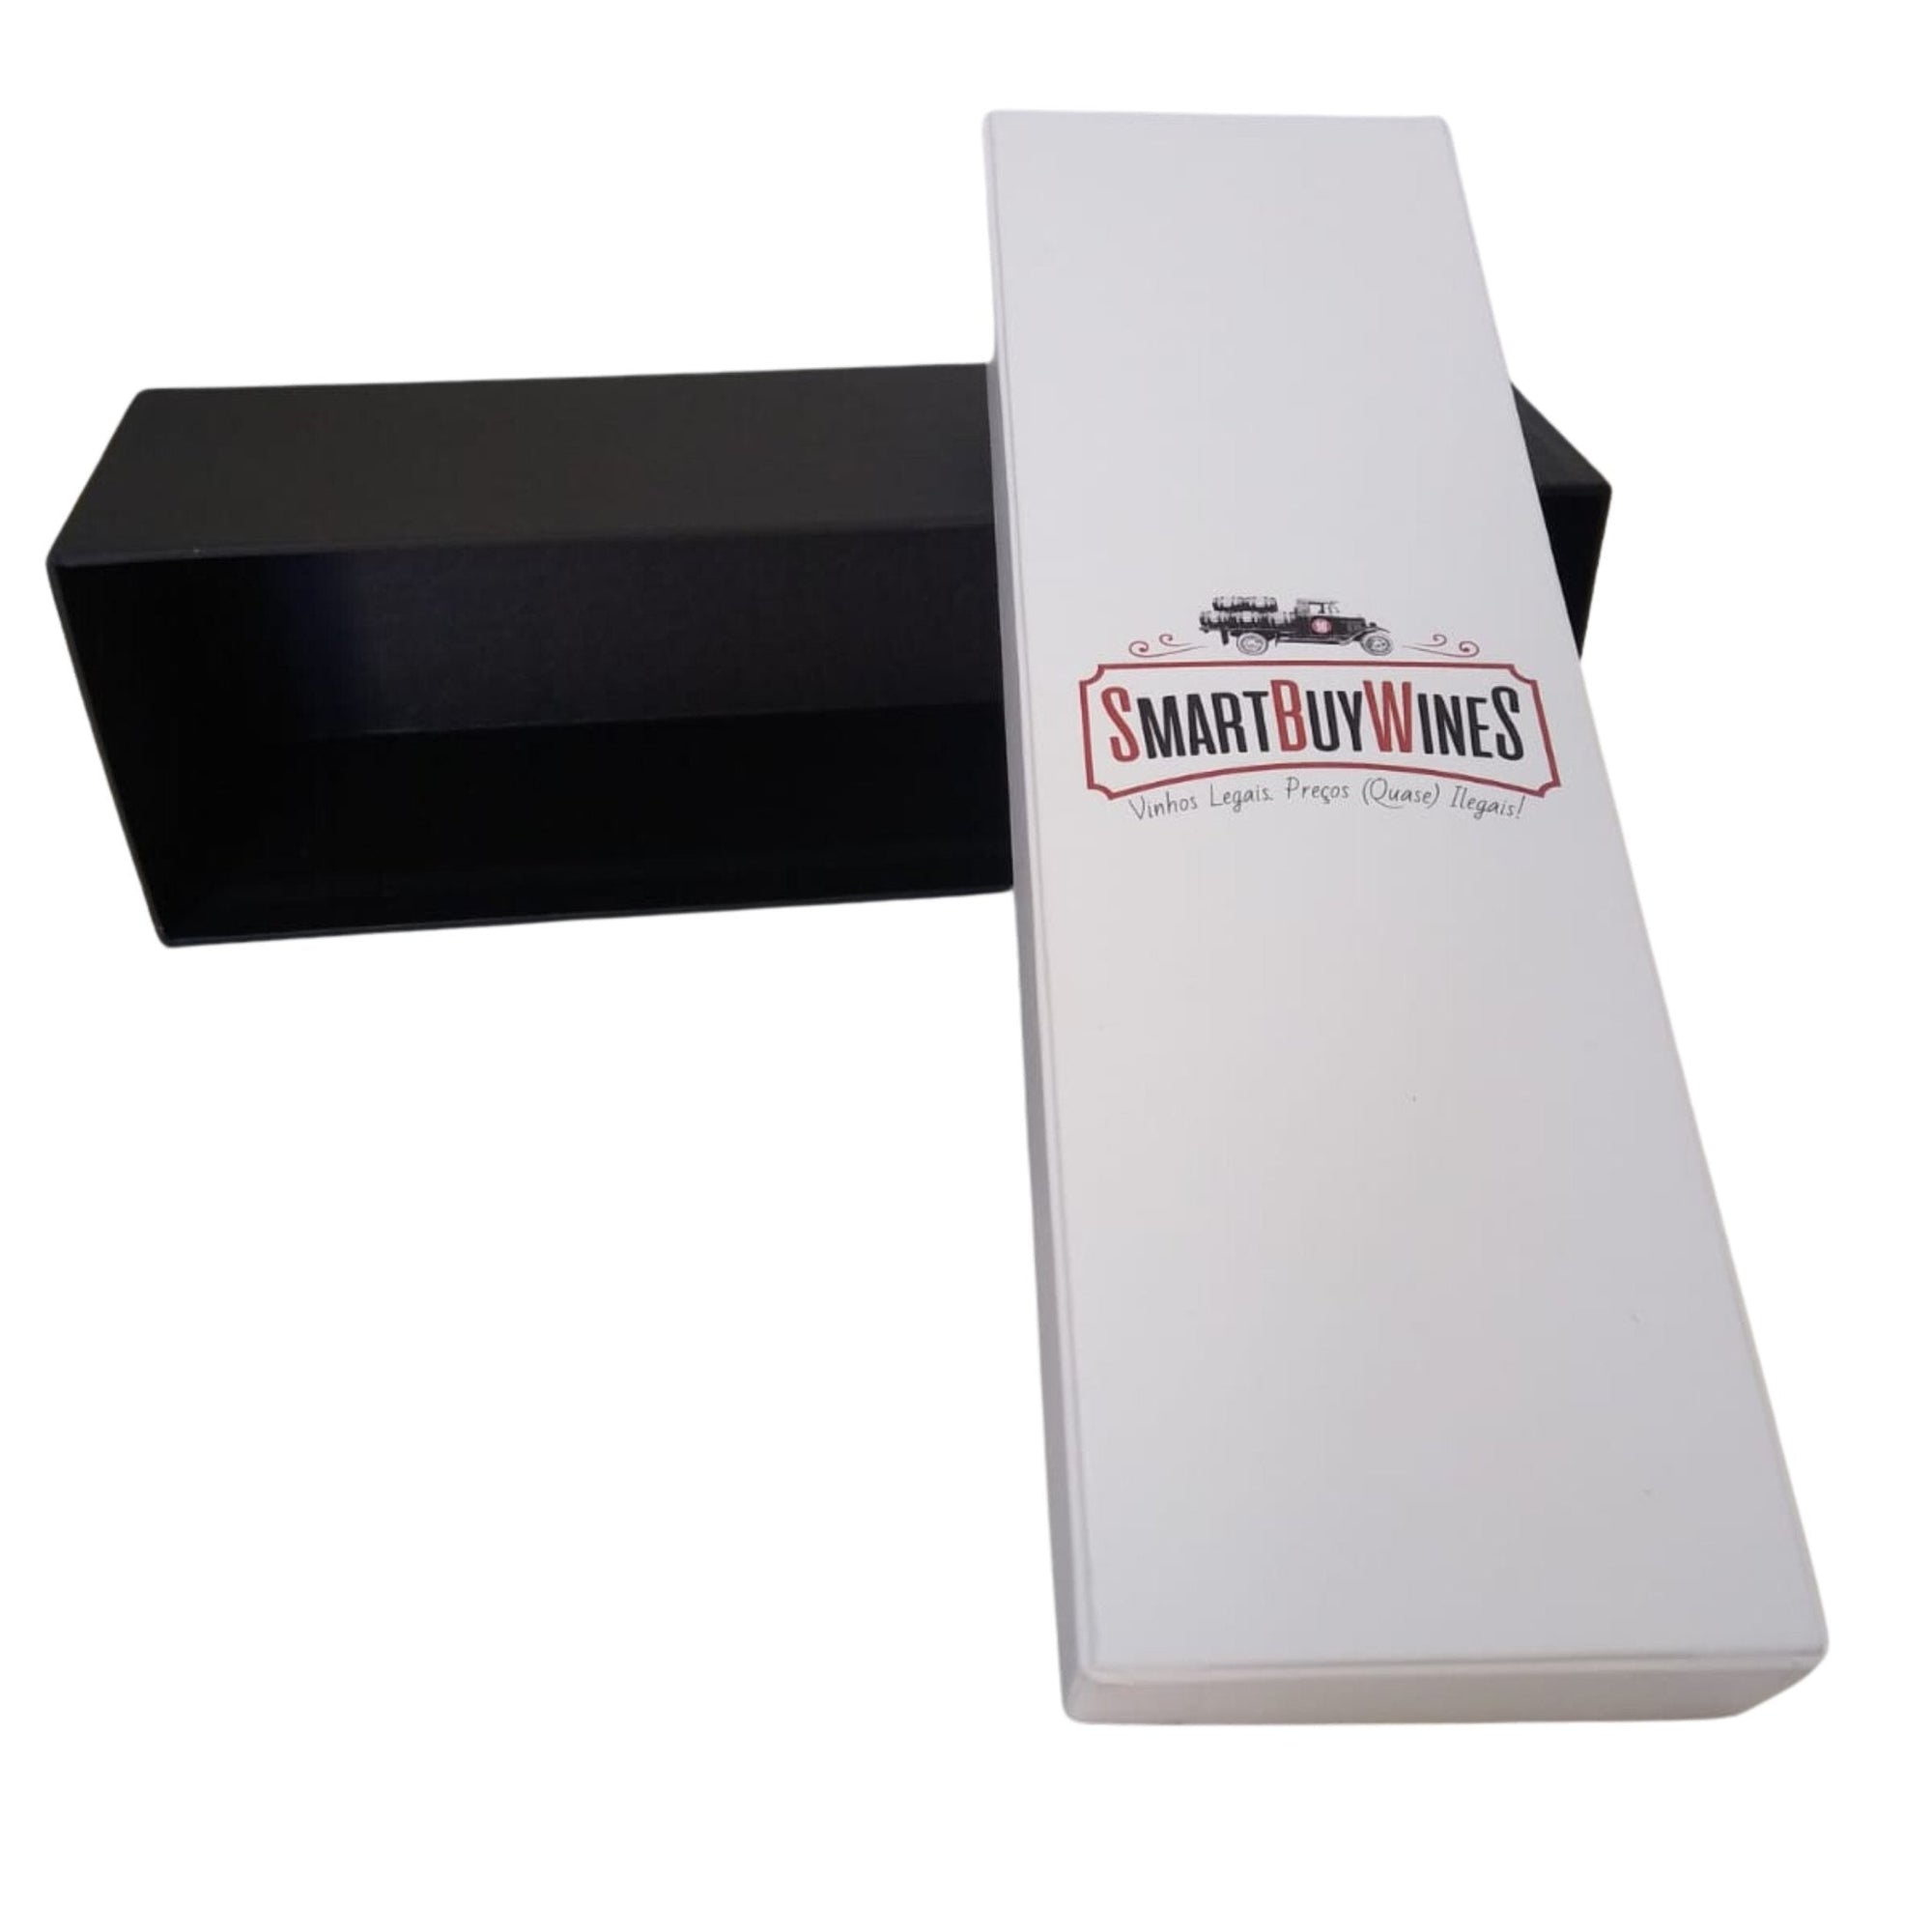 Presente - Trinchero - Sutter Home White Zinfandel, California embalado na caixa - SmartBuyWines.com.br